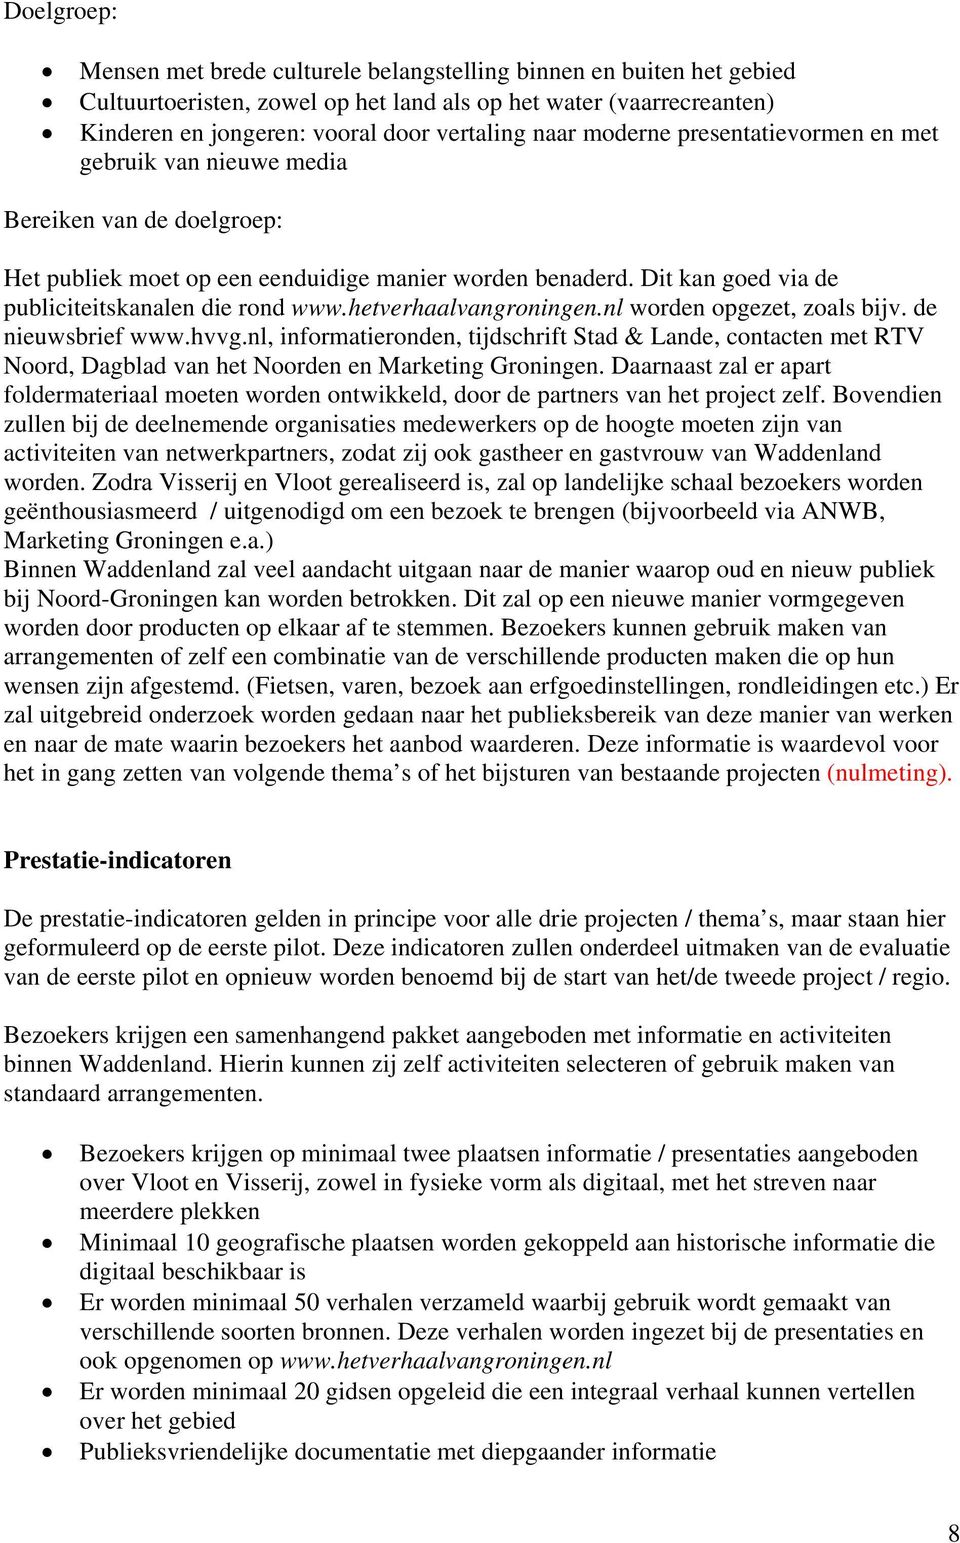 hetverhaalvangroningen.nl worden opgezet, zoals bijv. de nieuwsbrief www.hvvg.nl, informatieronden, tijdschrift Stad & Lande, contacten met RTV Noord, Dagblad van het Noorden en Marketing Groningen.